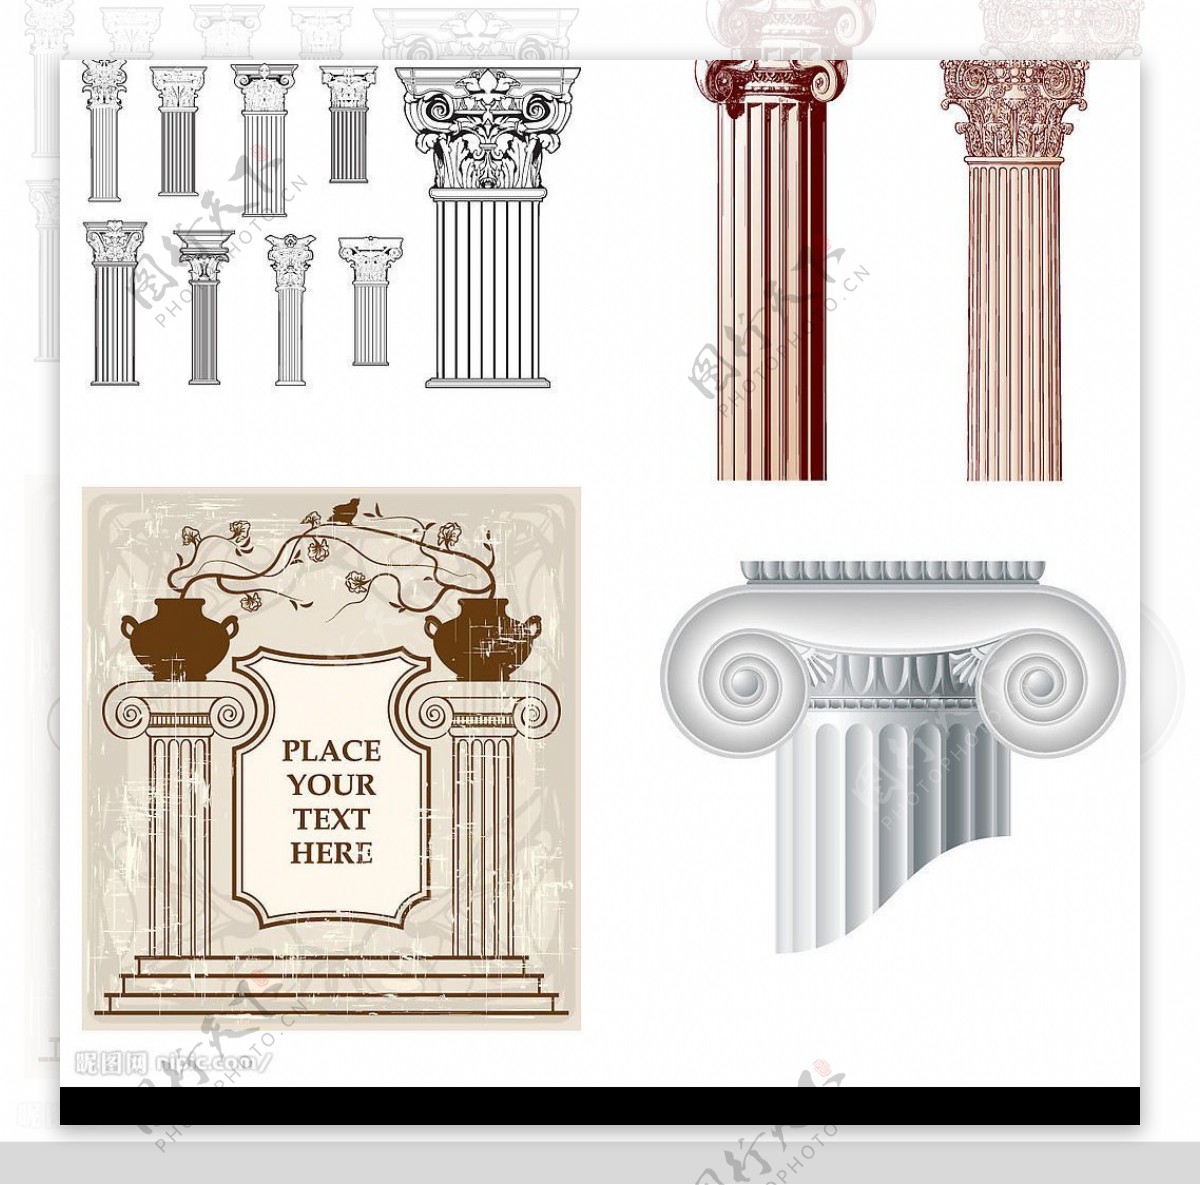 罗马柱头图案图片